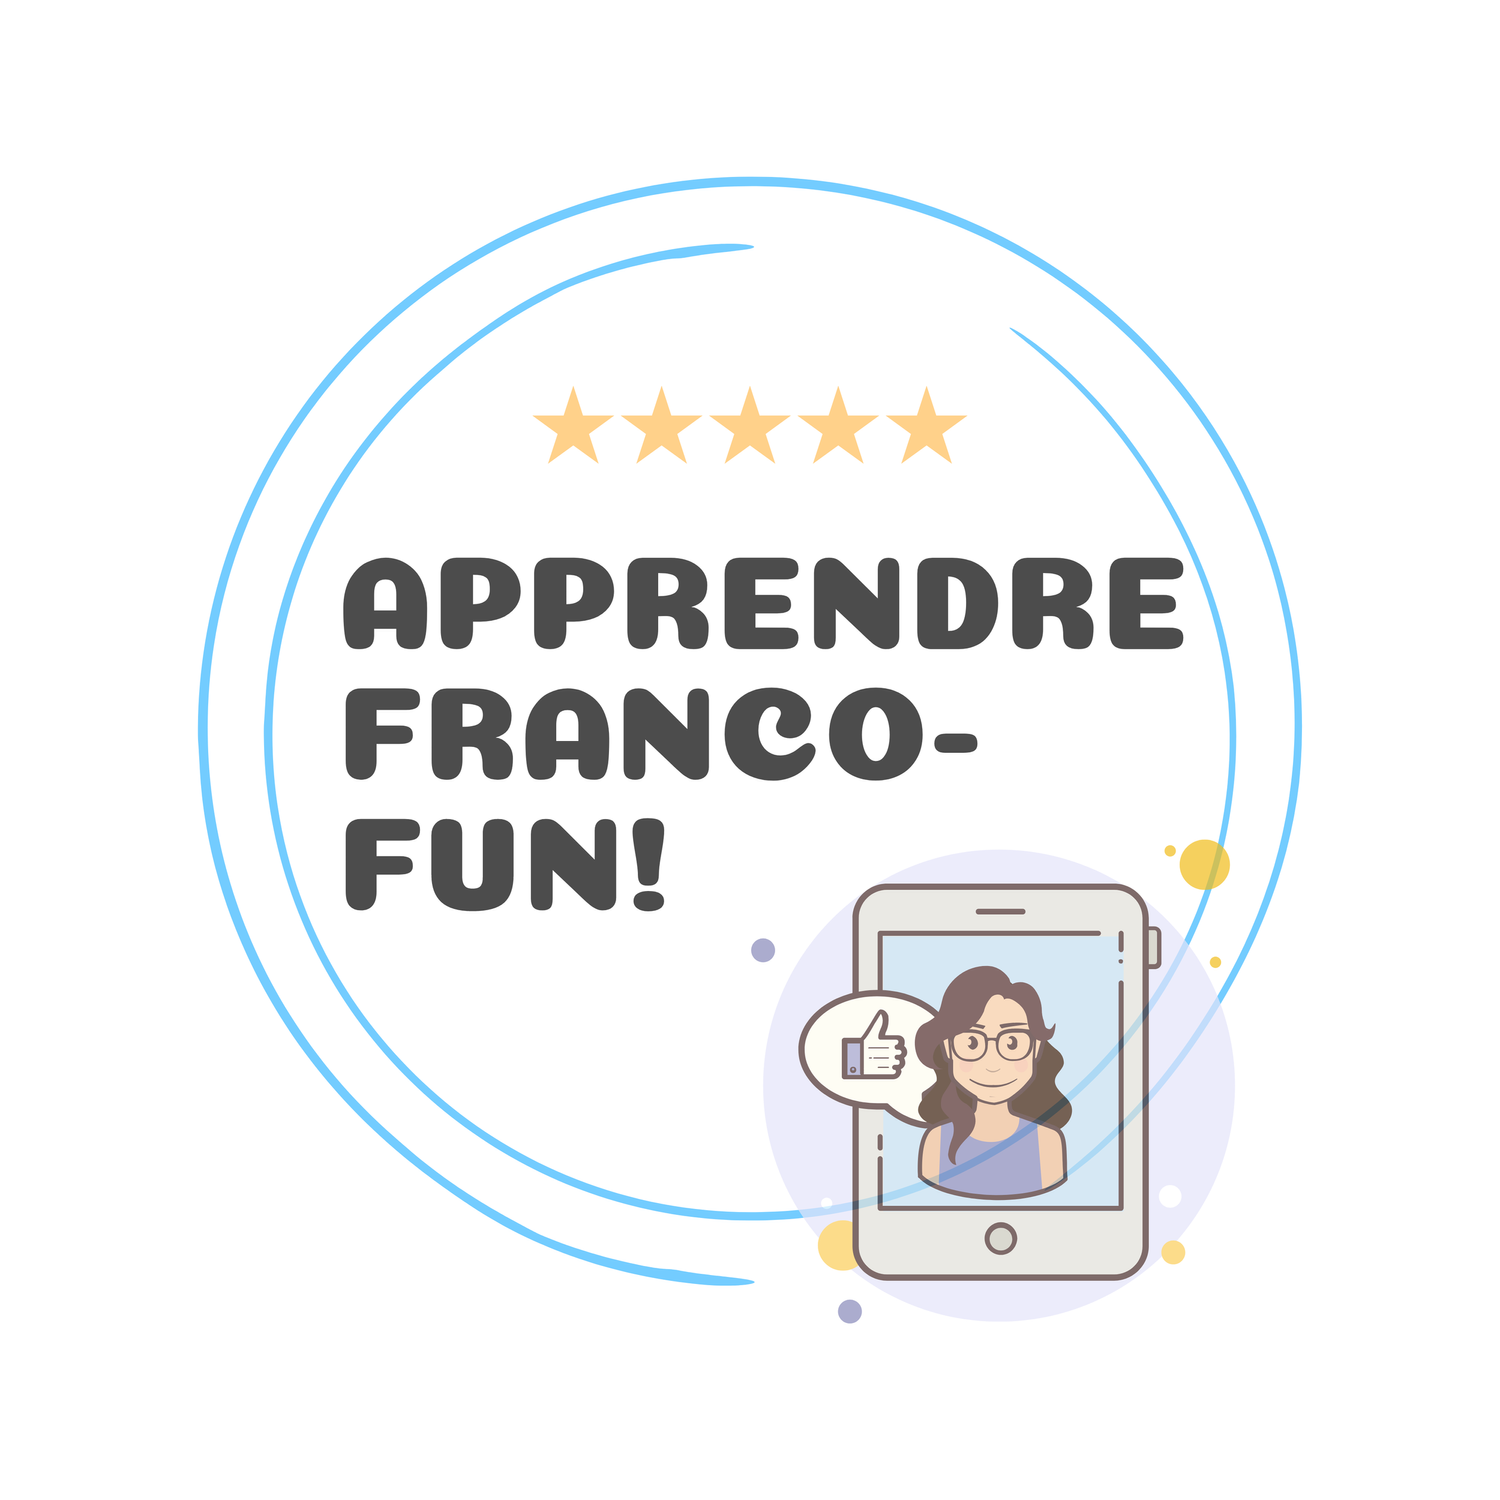 Apprendre Franco-fun!